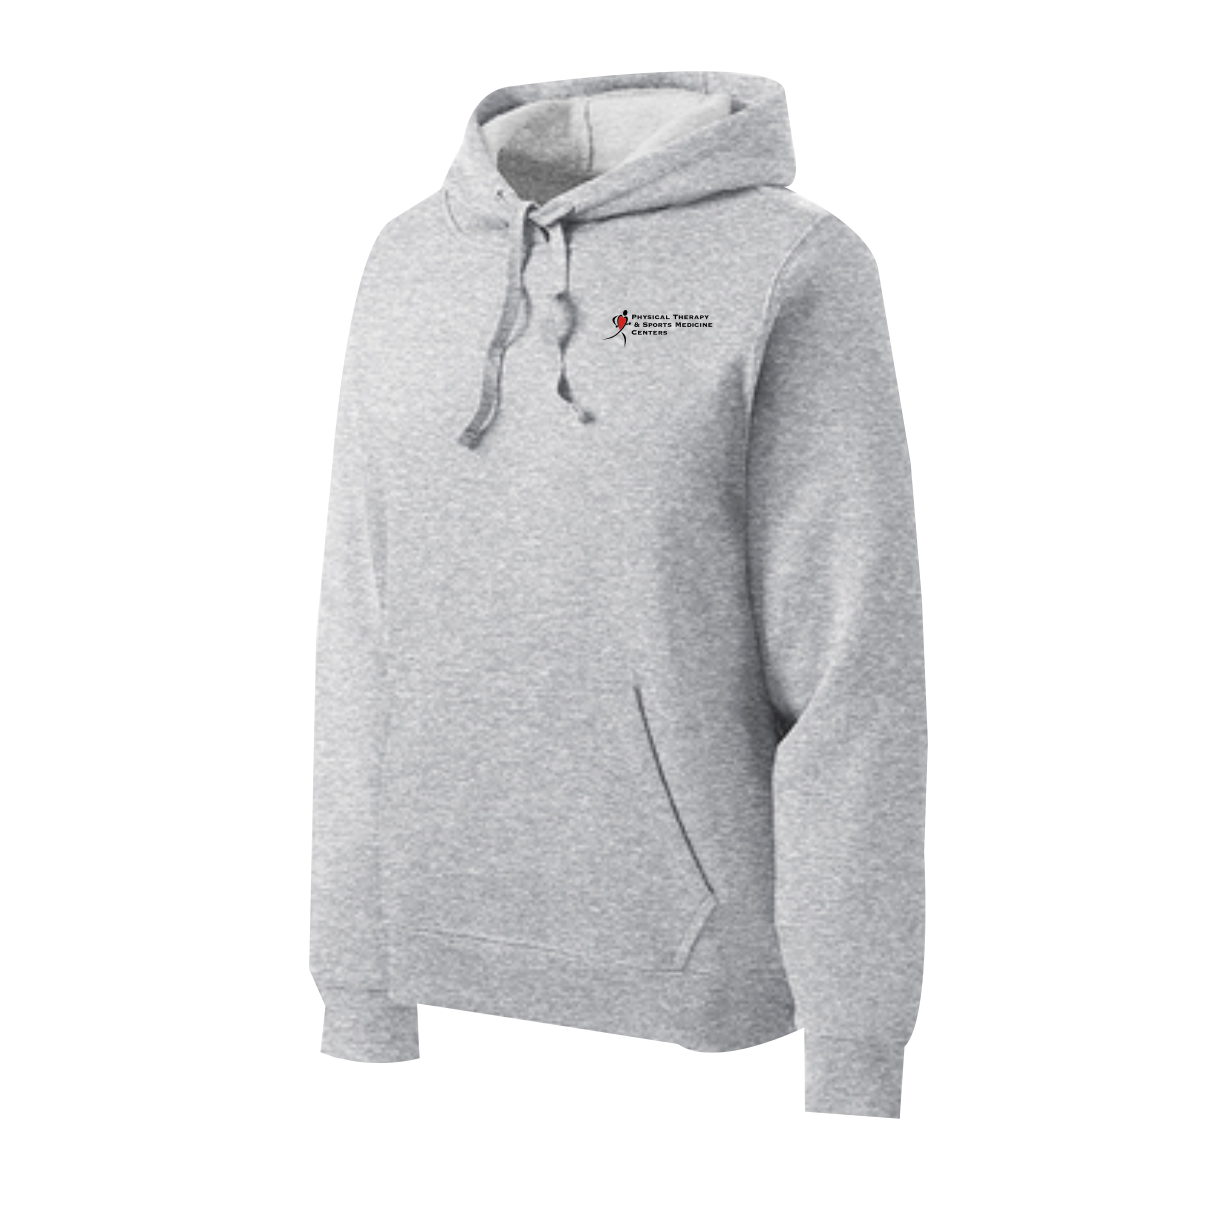 PTSMC Sport-Tek® Pullover Hooded Sweatshirt (screen printed) – The ...